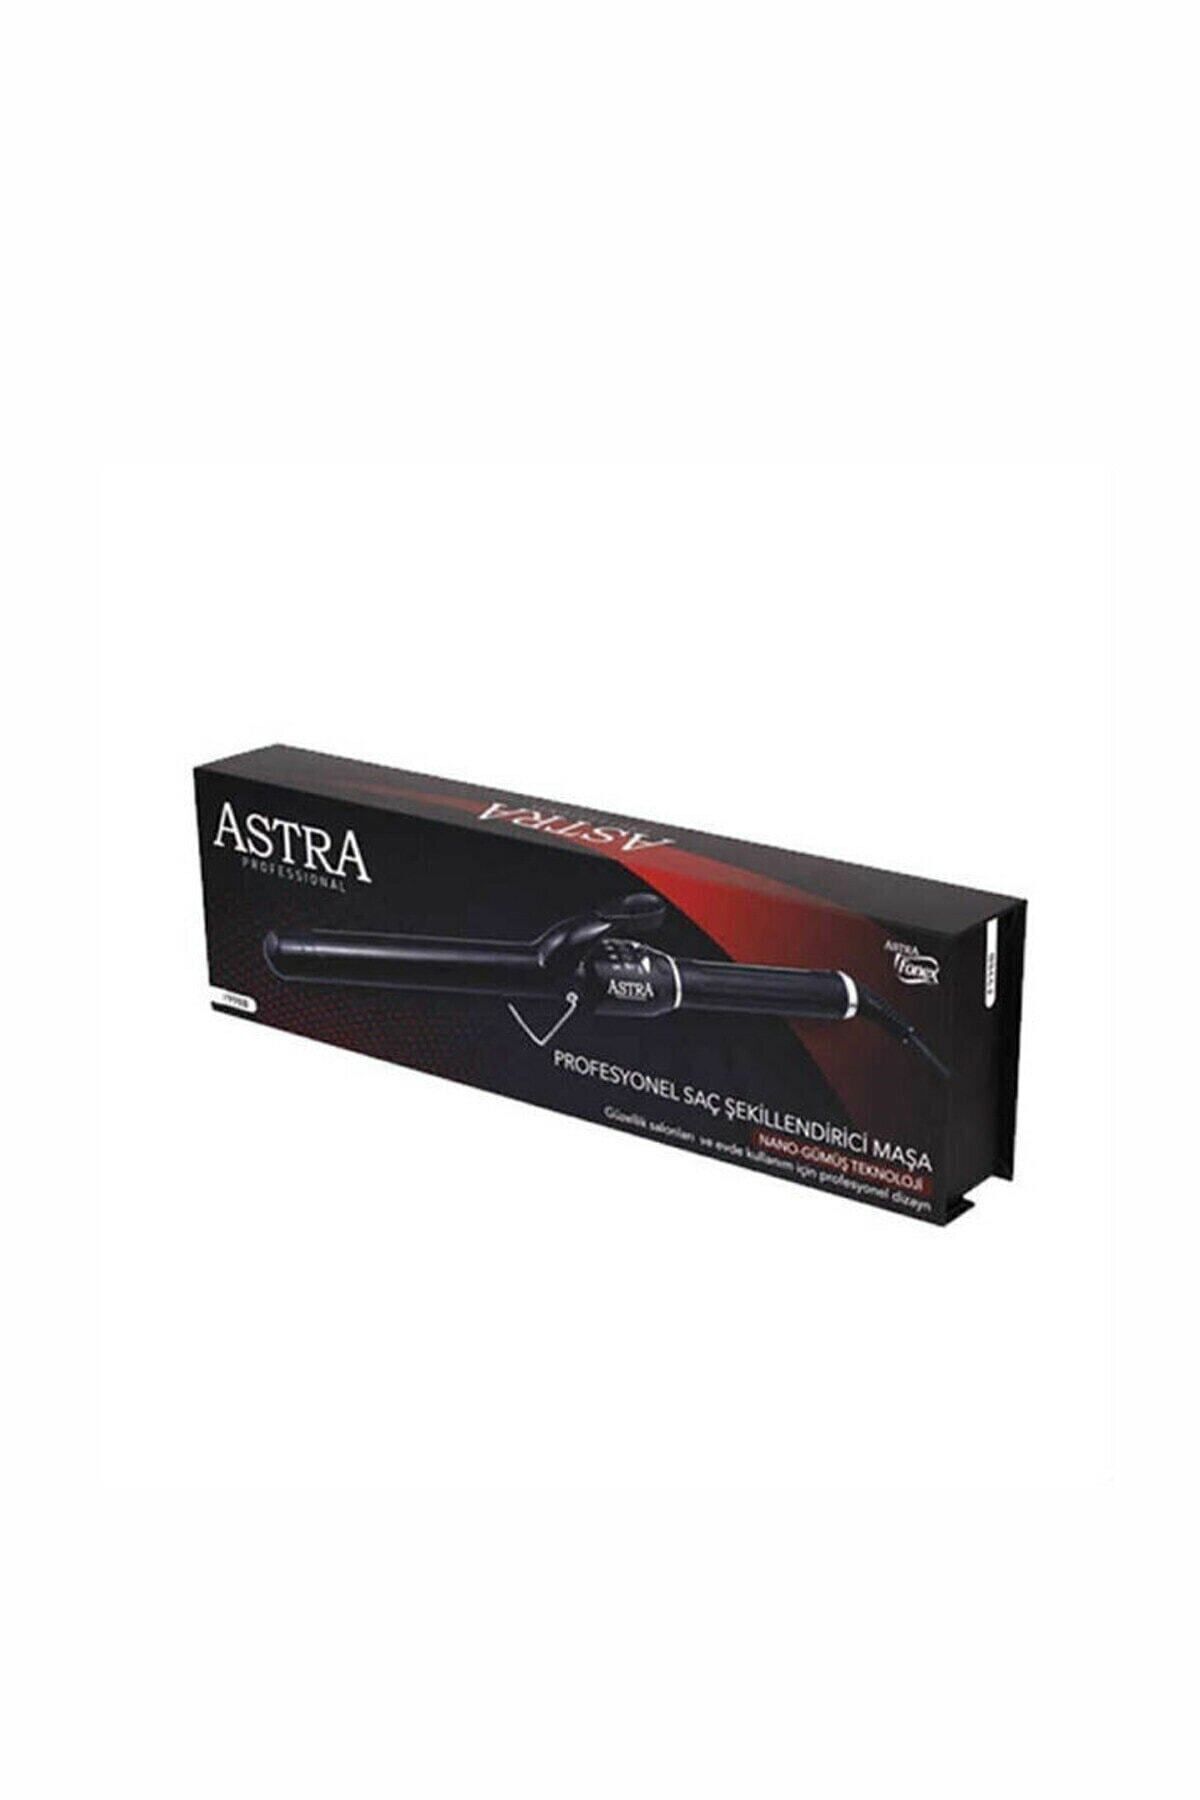 Astra F998B Profesyonel Saç Şekillendirici Maşa 32 mm